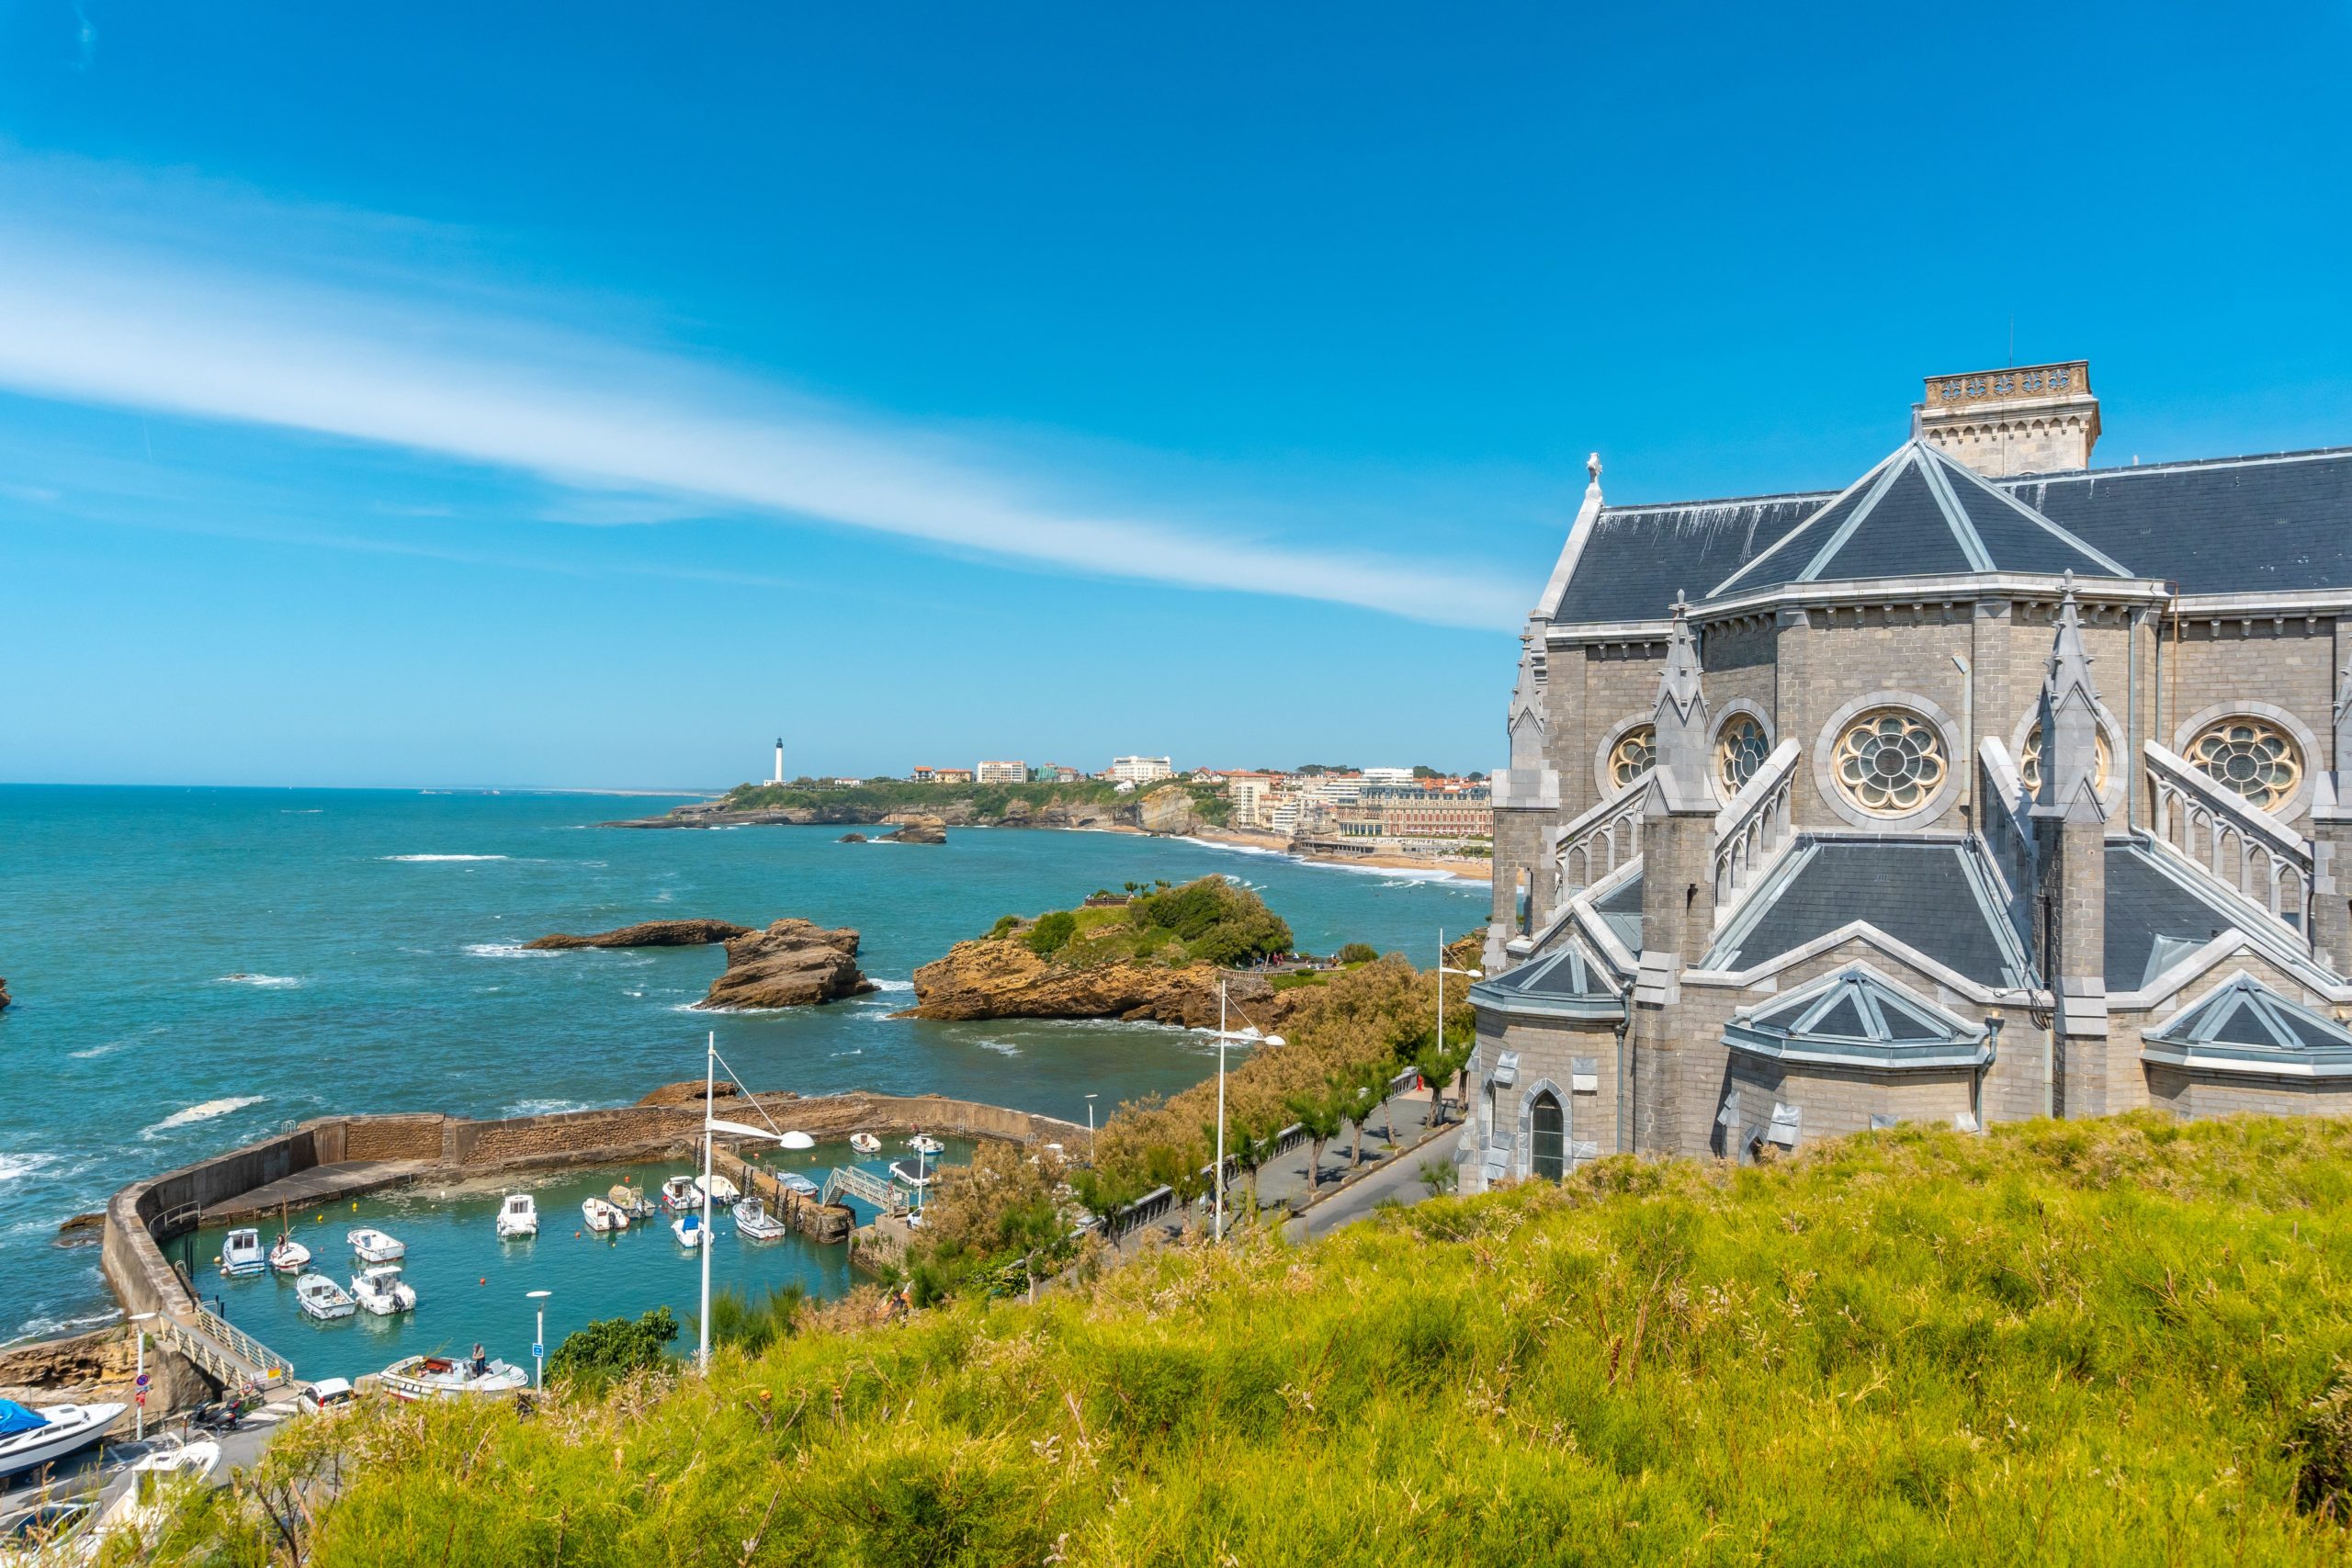 Lire la suite à propos de l’article Exploration du marché immobilier de Biarritz